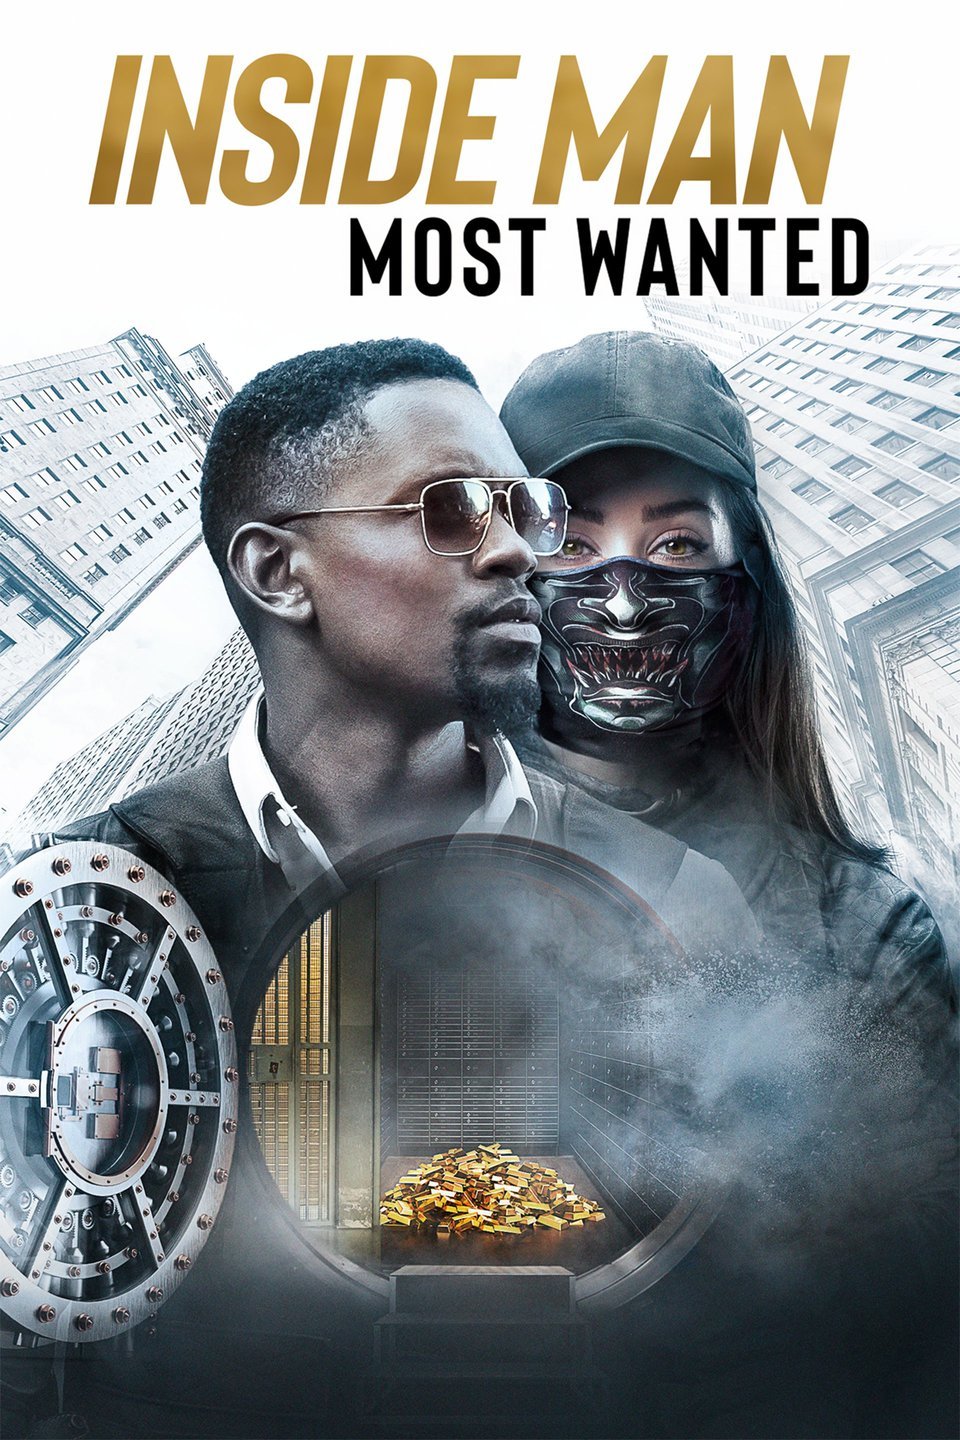 [ฝรั่ง] Inside Man: Most Wanted (2019) [1080p] [พากย์อังกฤษ DTS] [Soundtrack บรรยายไทย + อังกฤษ] [เสียงอังกฤษ + ซับไทย] [OPENLOAD]